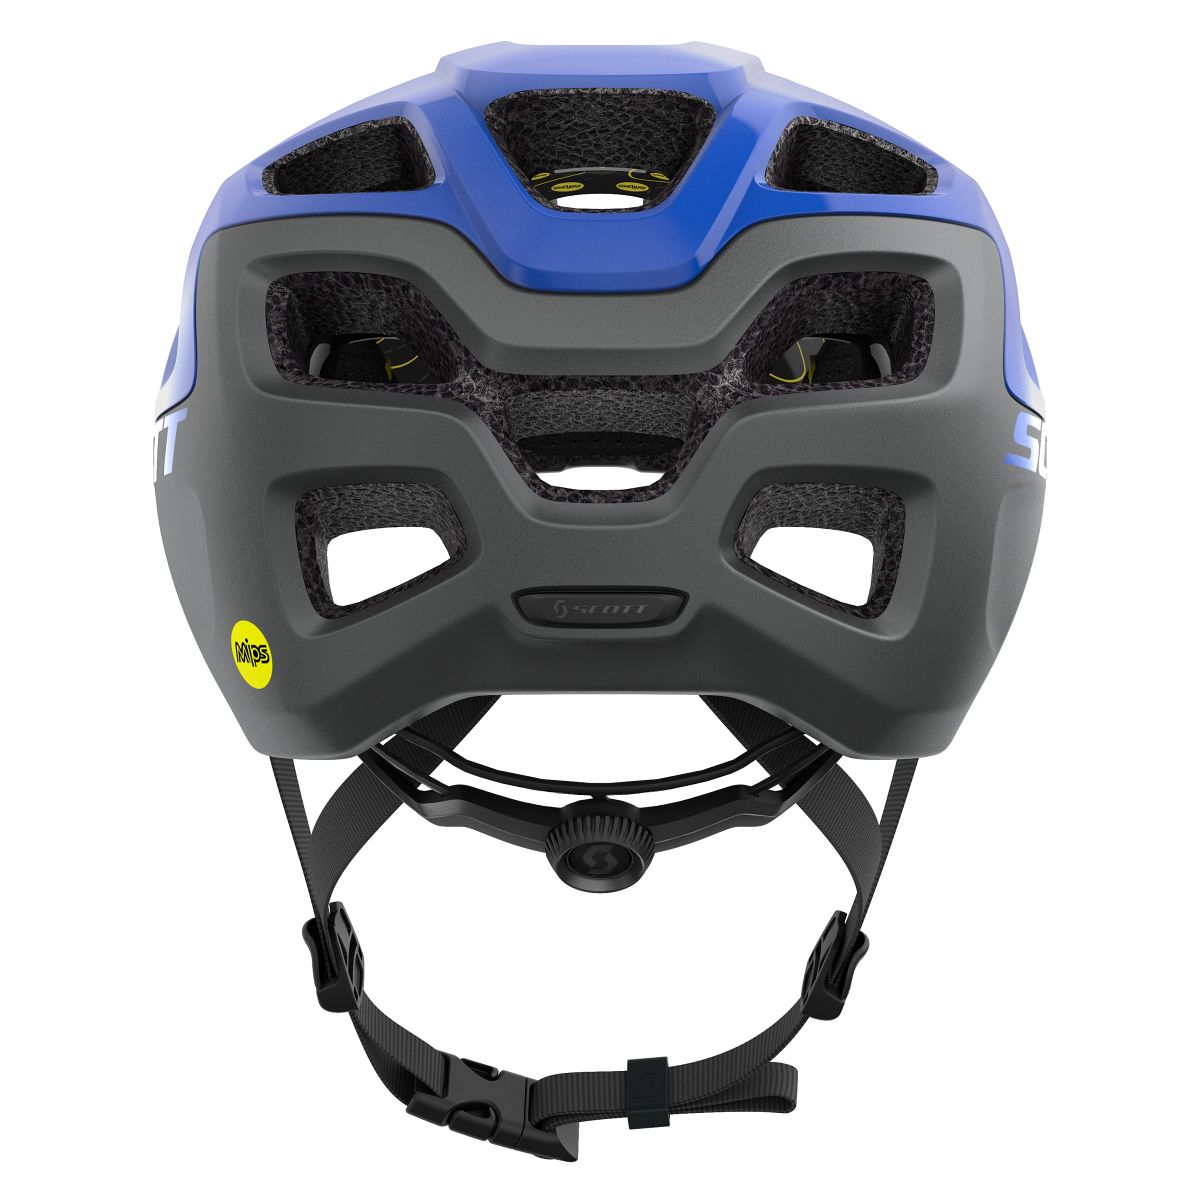 Scott Vivo Plus MIPS MTB Fahrrad Helm blau/grau 2020 